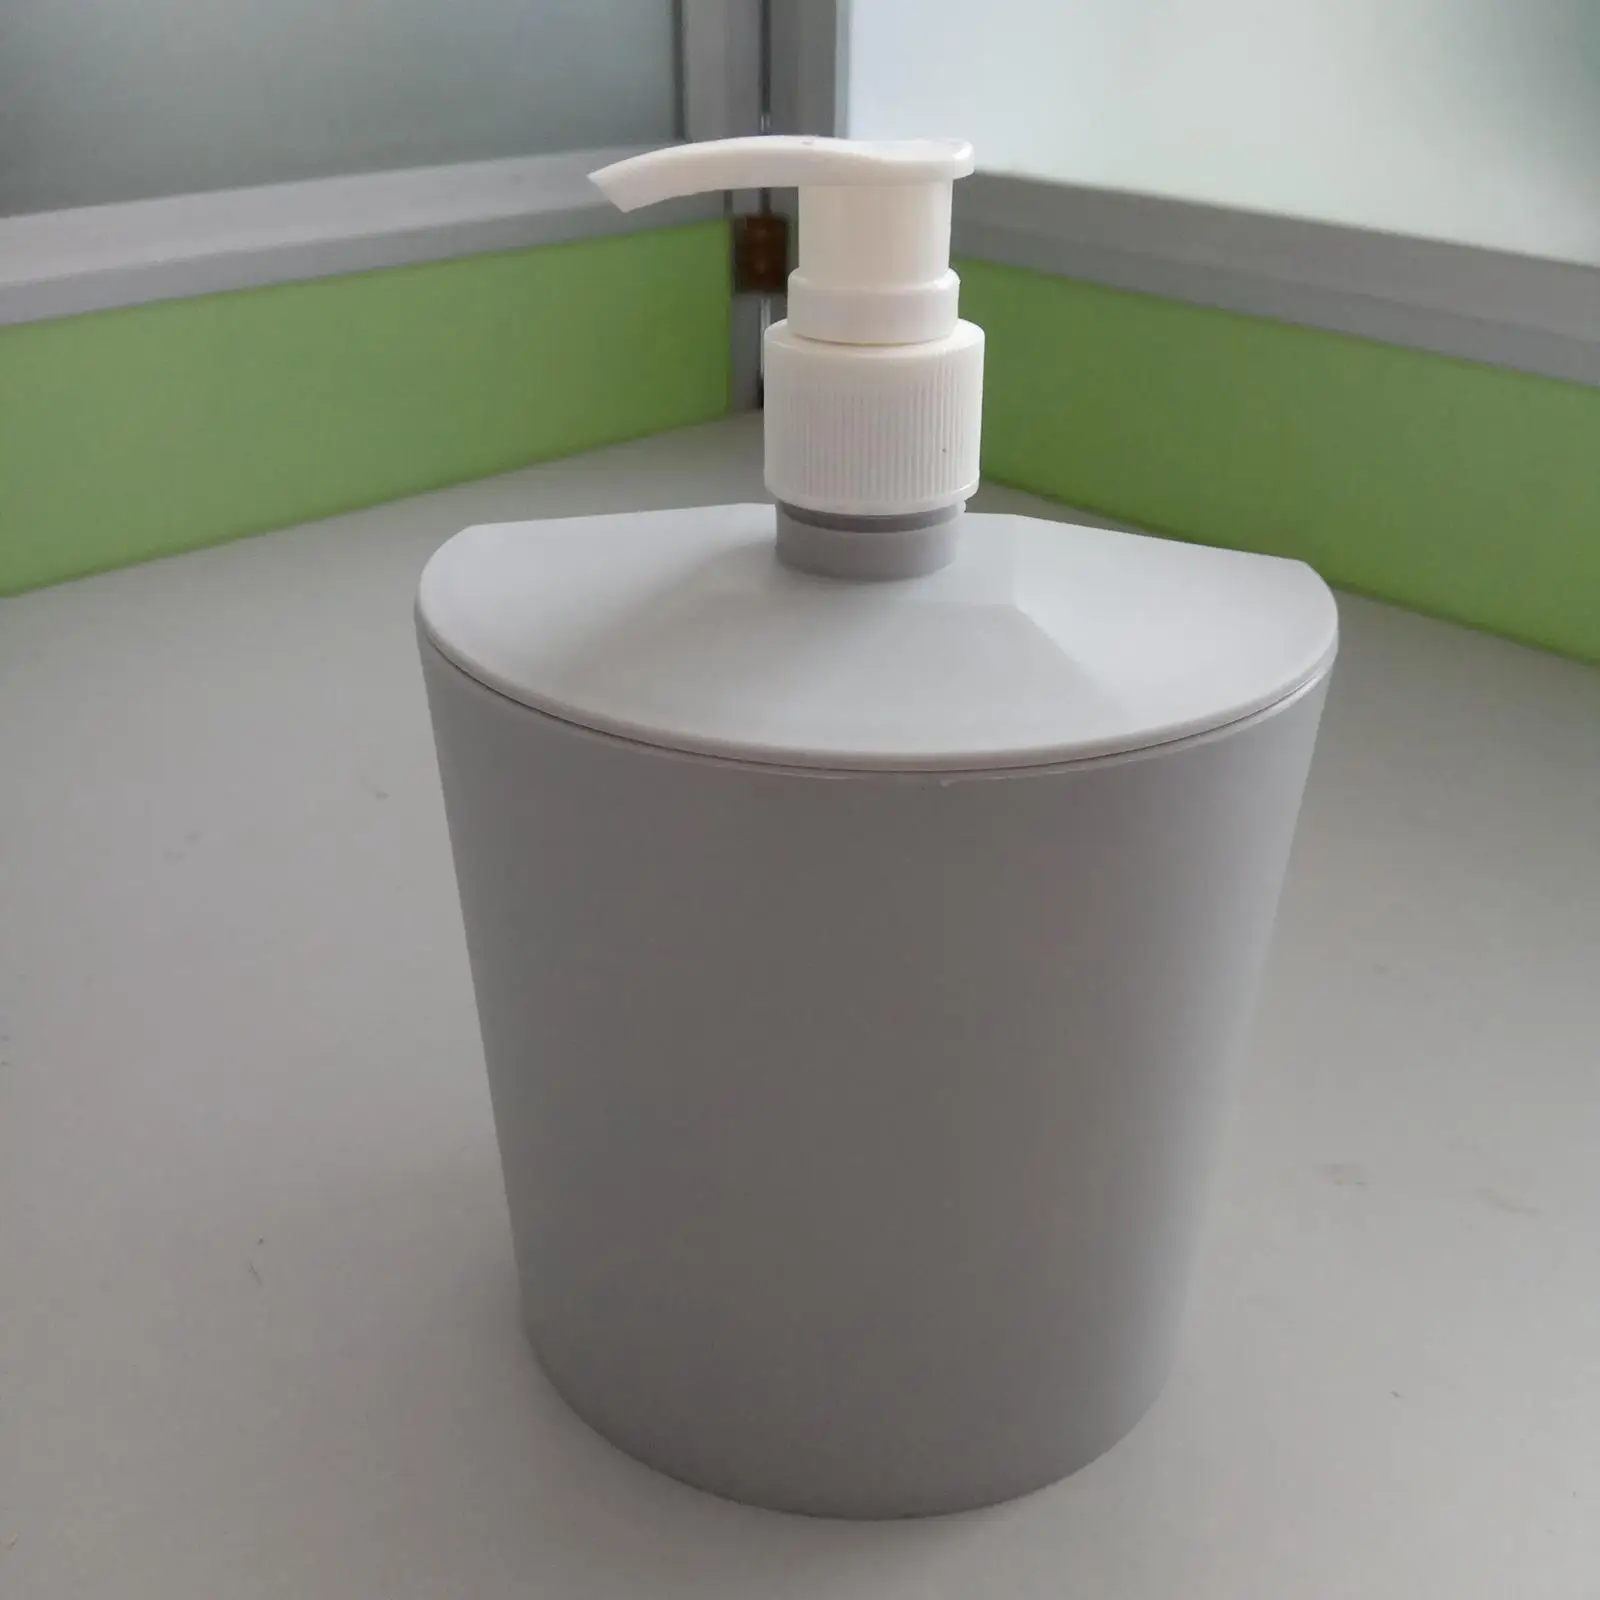 Kitchen Soap Dispenser with Sponge Holder Multipurpose Manual Dishwashing Soap Pump Soap Liquid Pump Bottle for Bathroom Bar